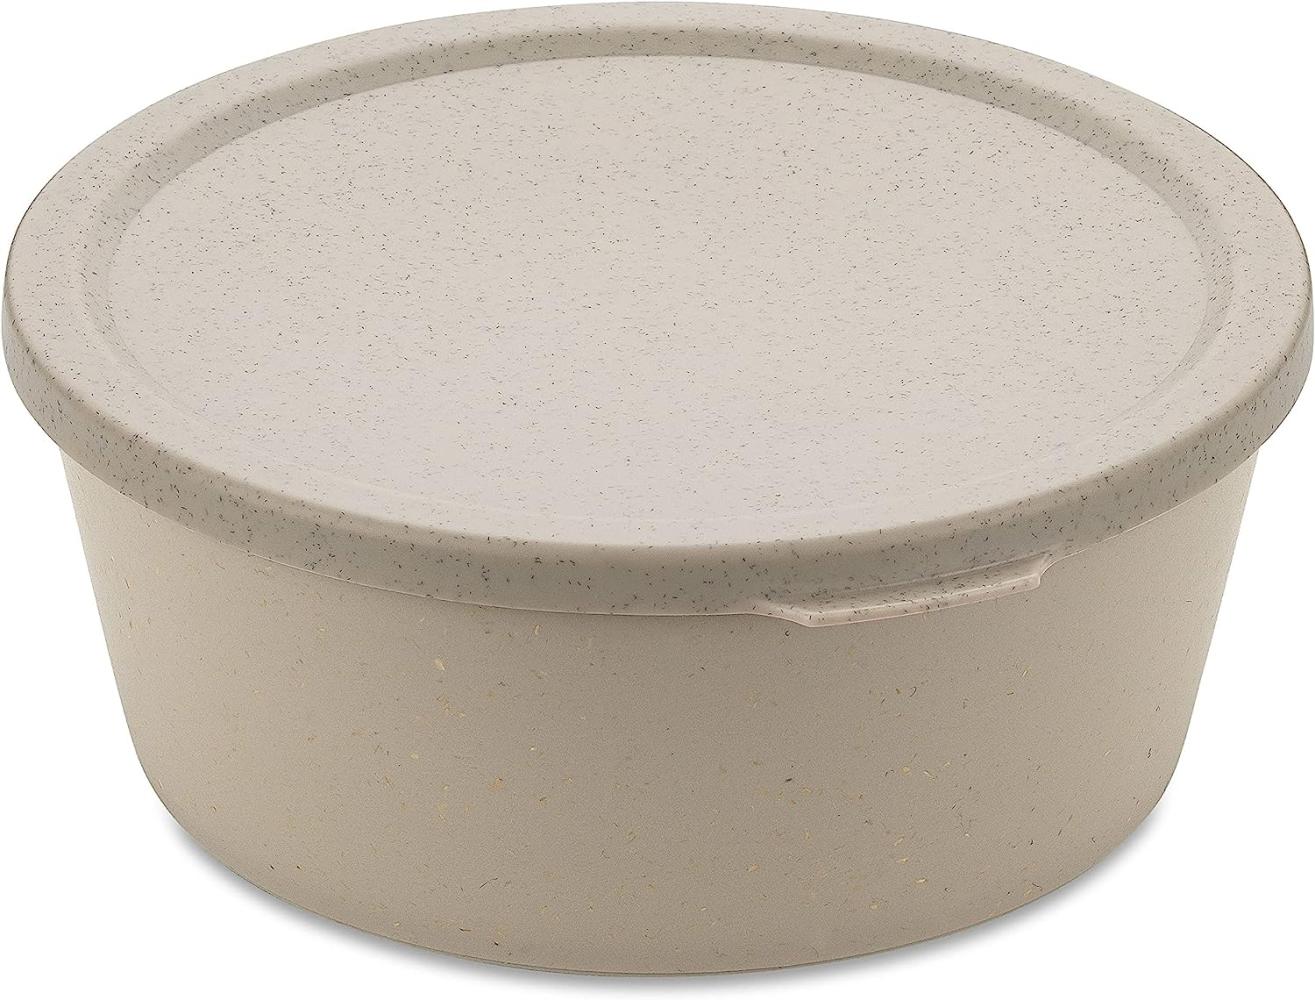 Koziol Schale Connect Bowl Mit Deckel, Schüssel, Kunststoff-Holz-Mix, Nature Desert Sand, 400 ml, 7202700 Bild 1